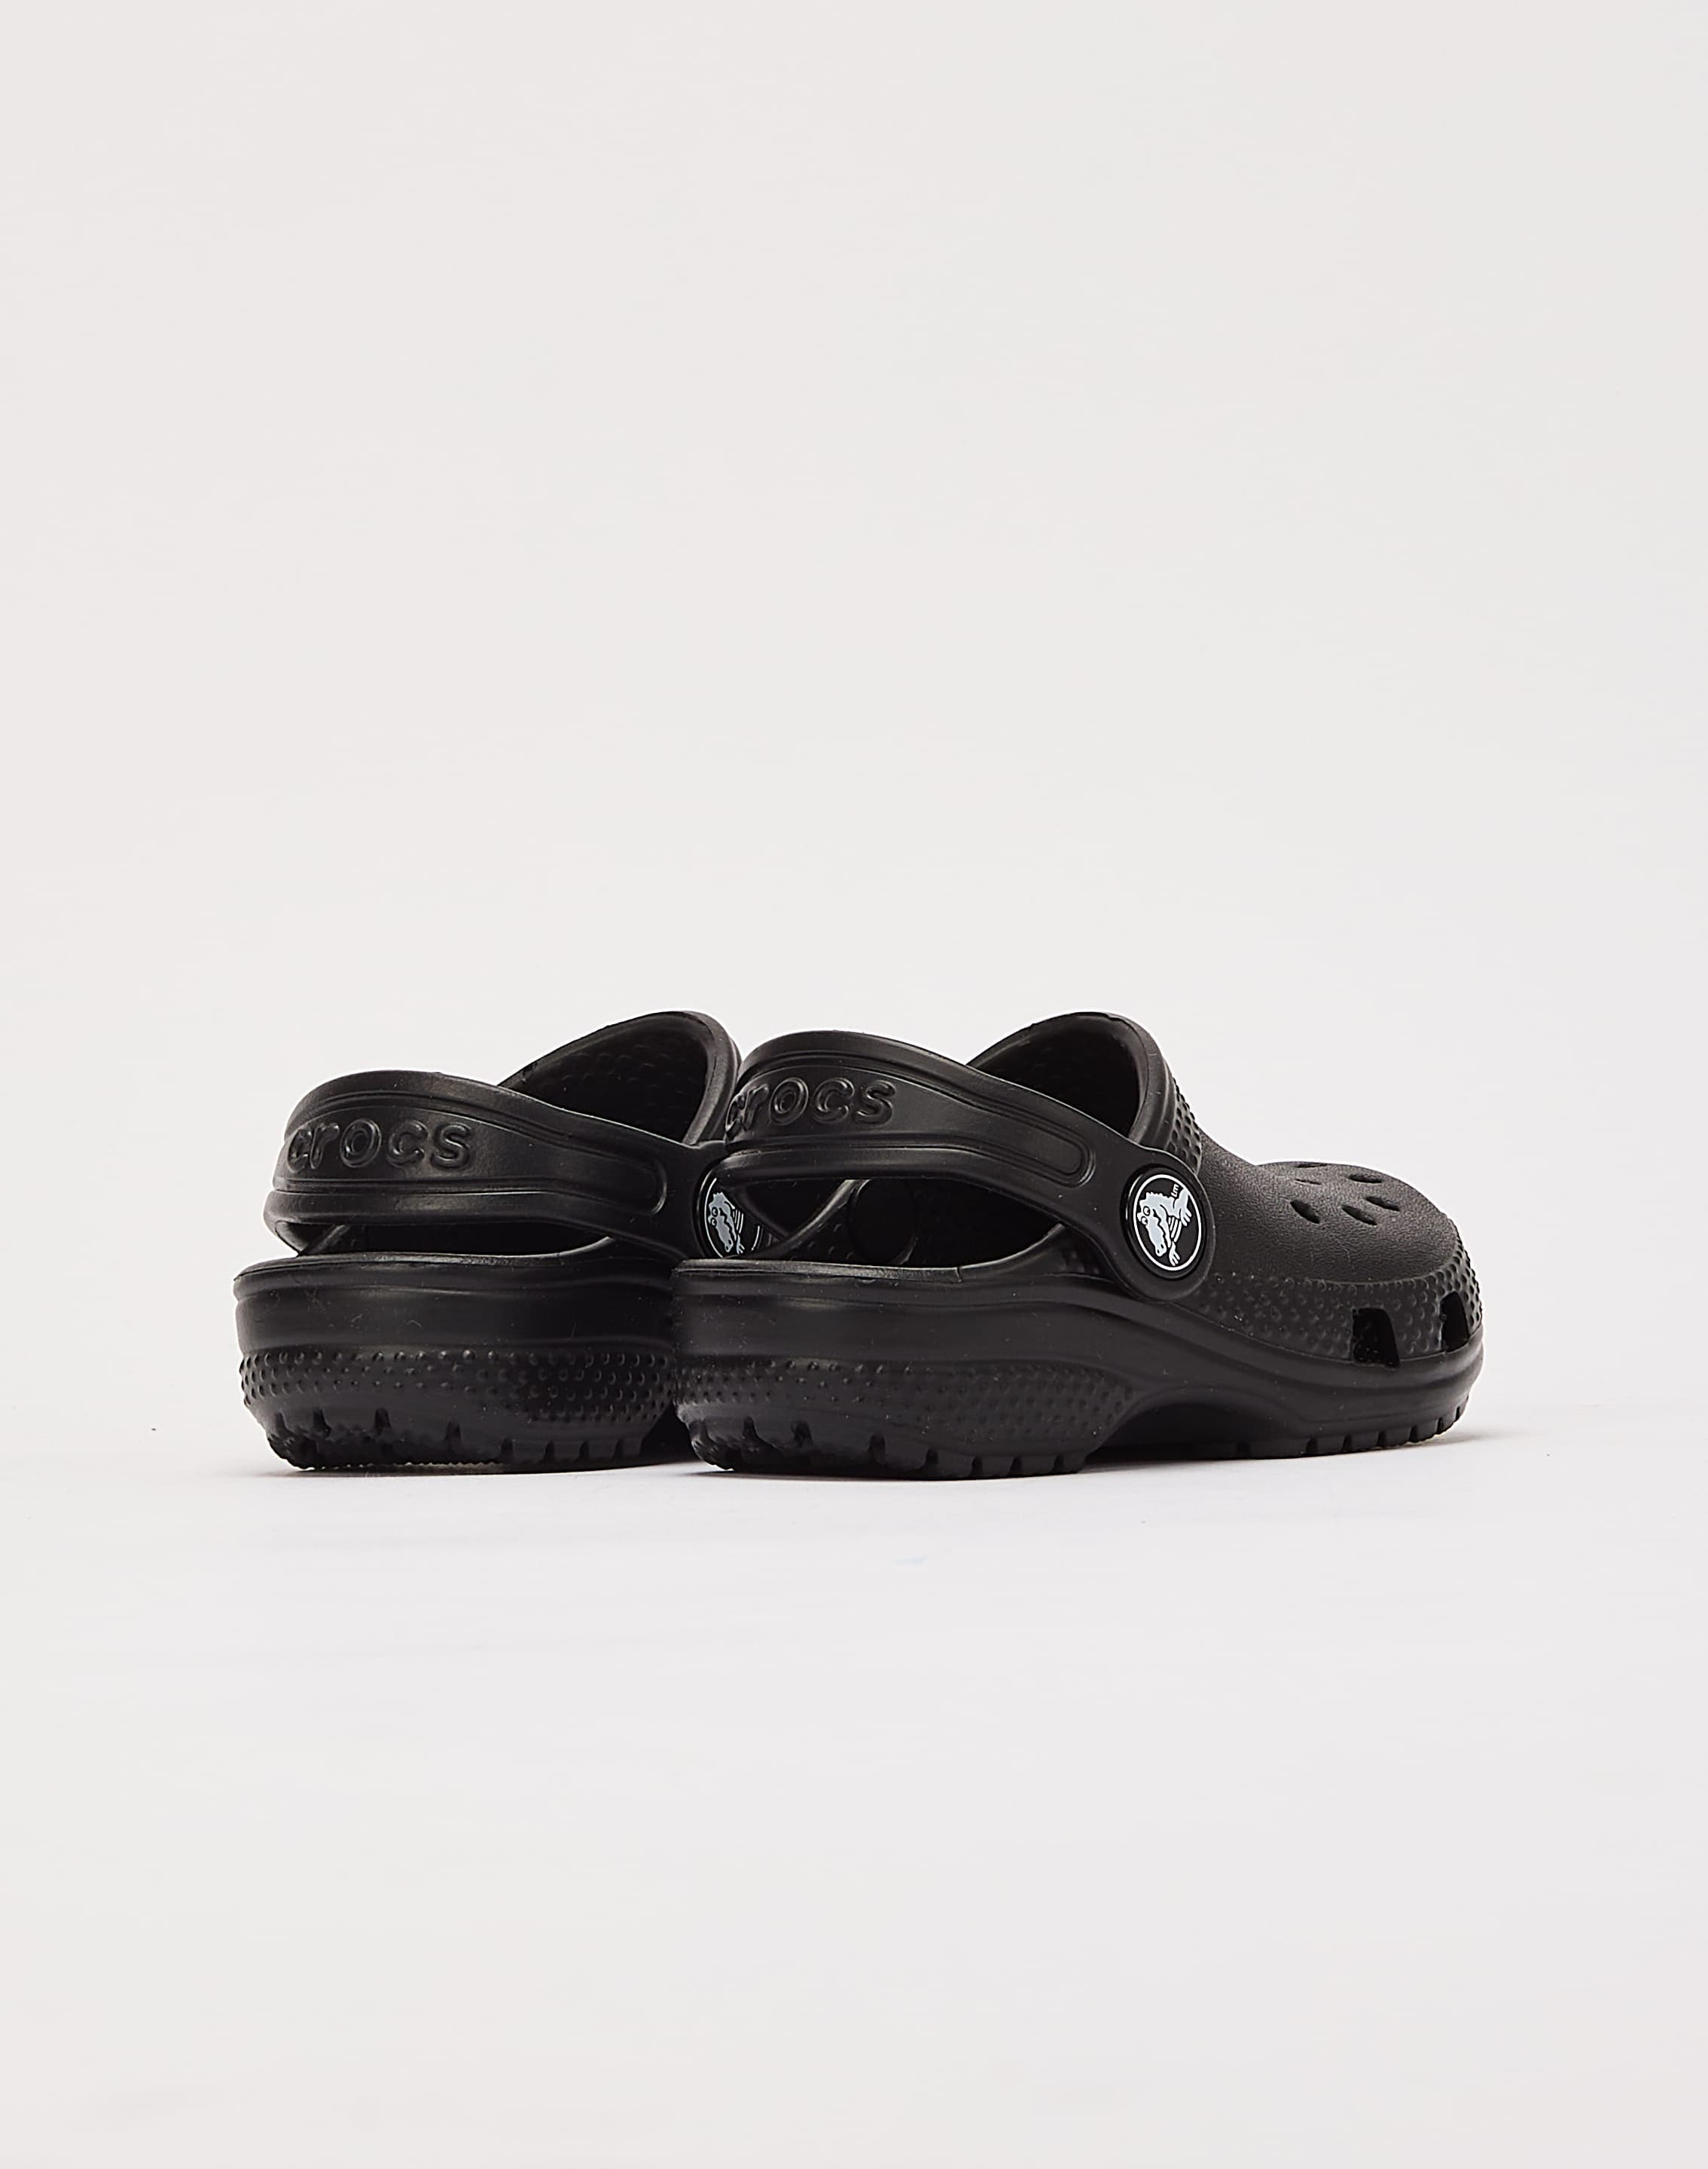 Old Paper Black Cat Crocs Shoes - CrocsBox